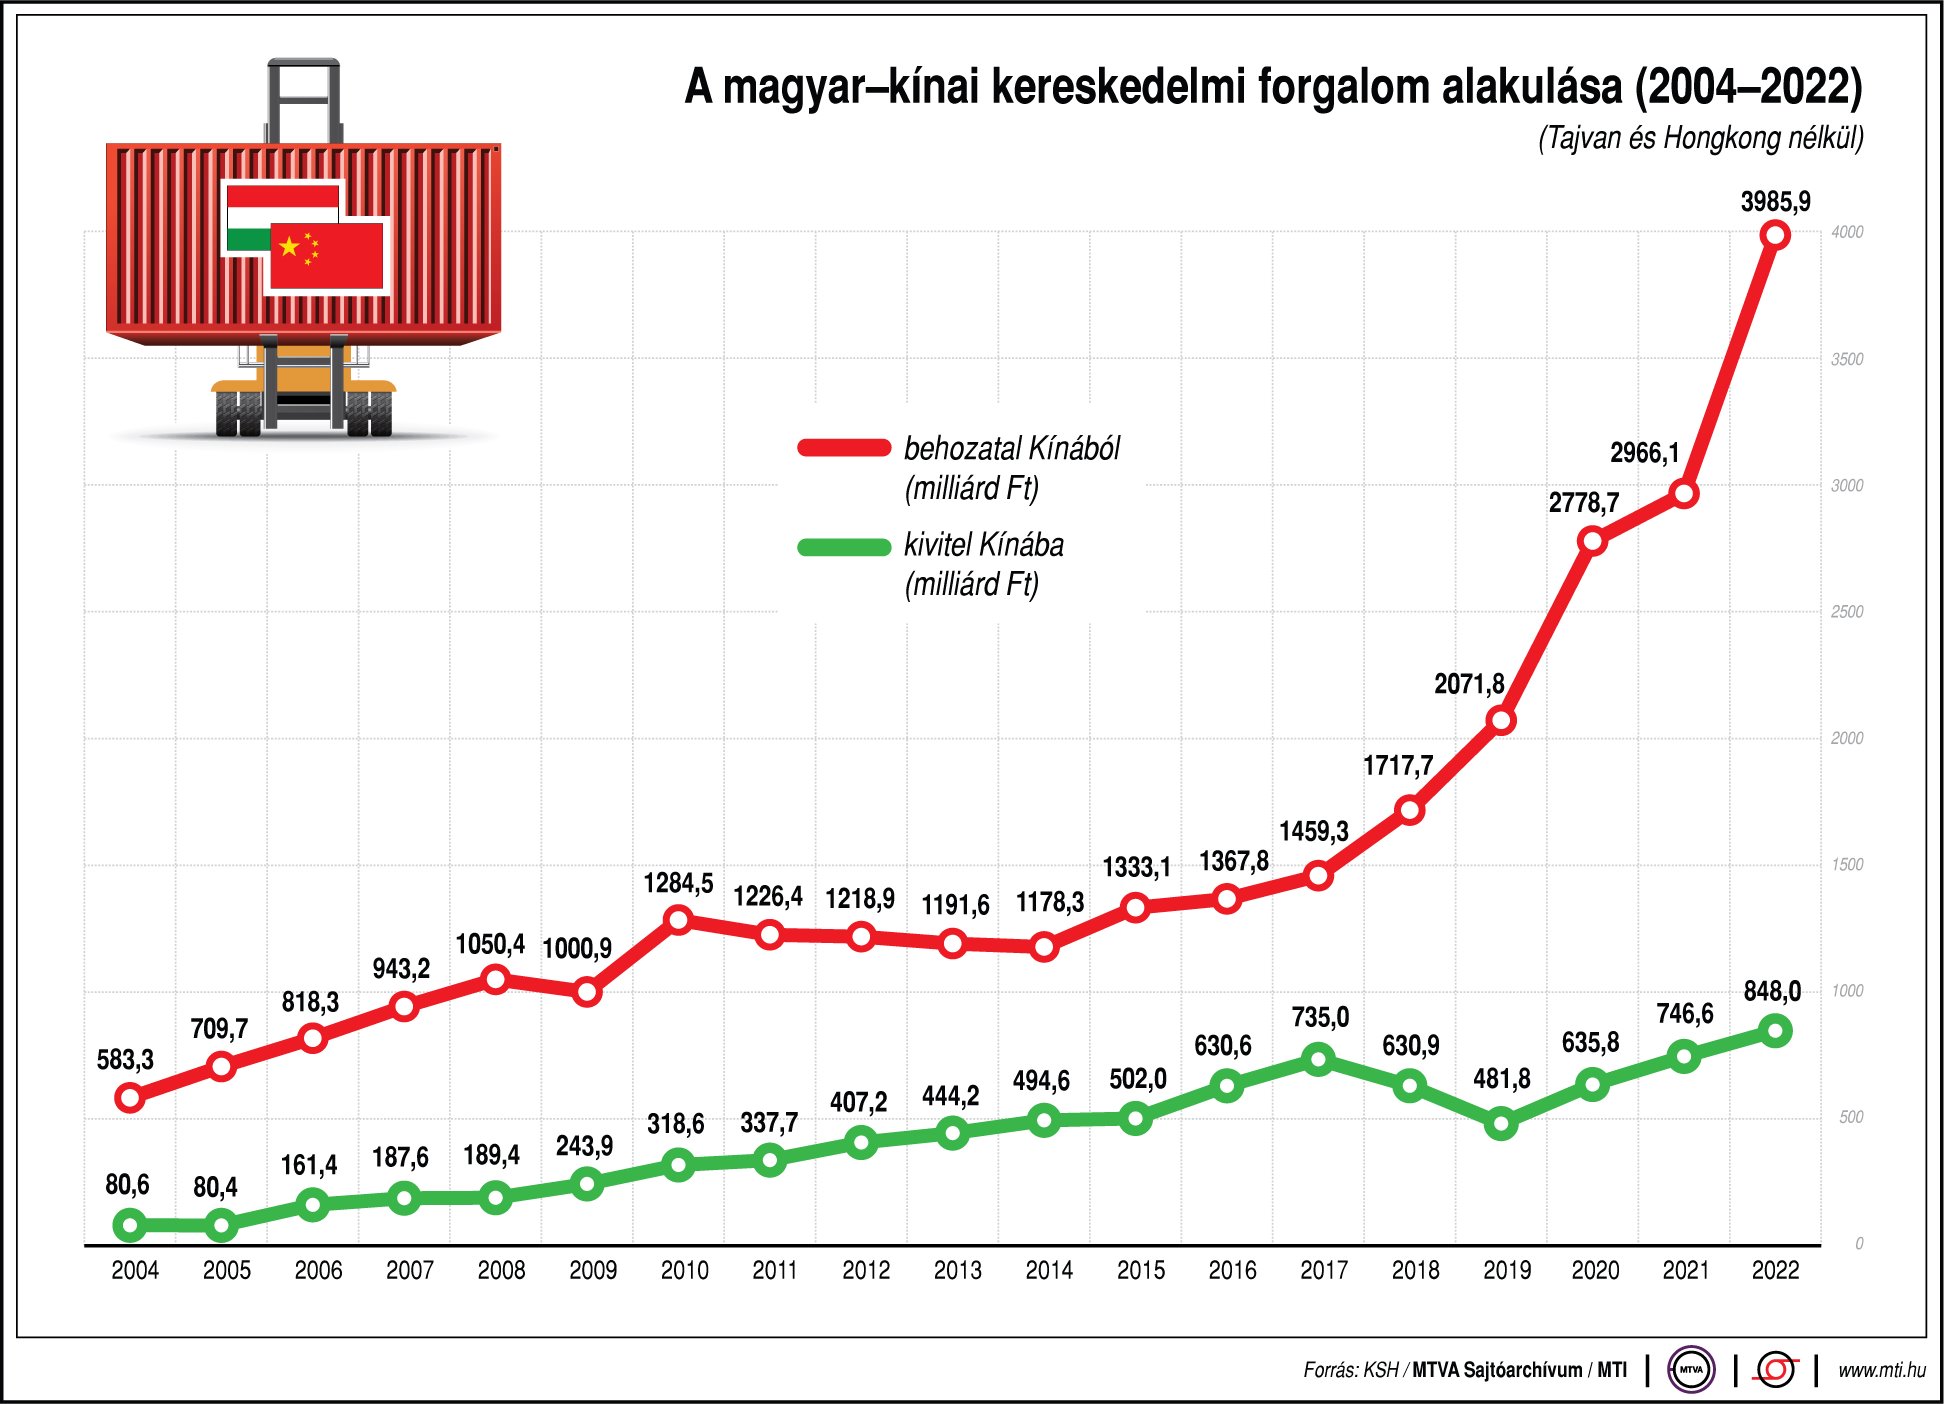 A magyar-kínai kereskedelmi forgalom alakulása (2004-2022)